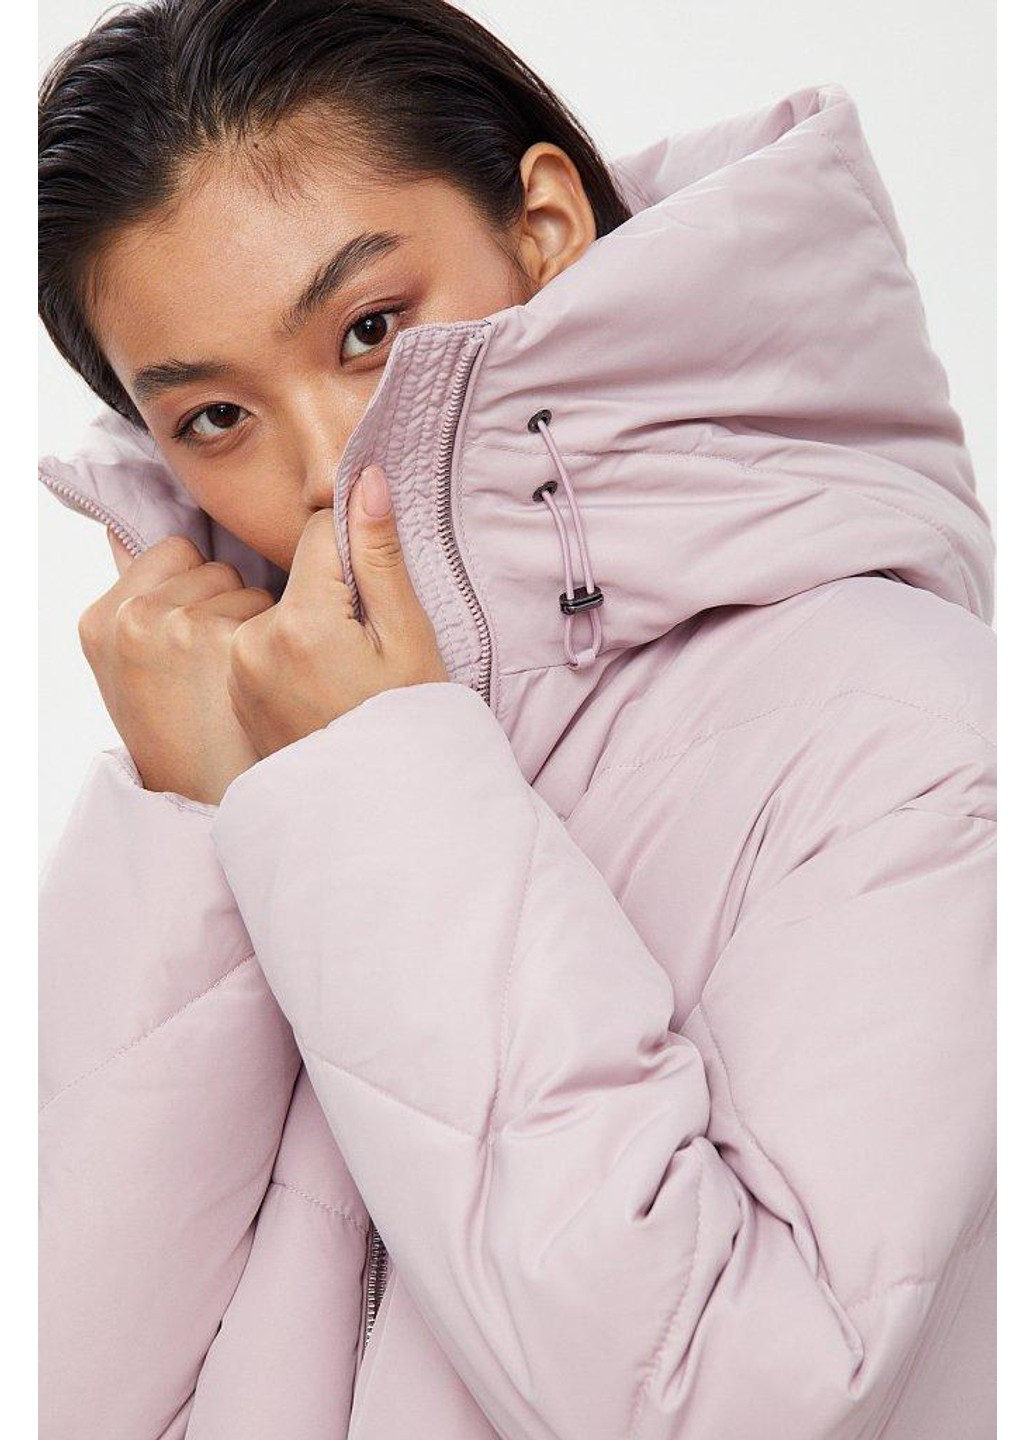 Розовая зимняя зимняя куртка w20-32000-812 Finn Flare